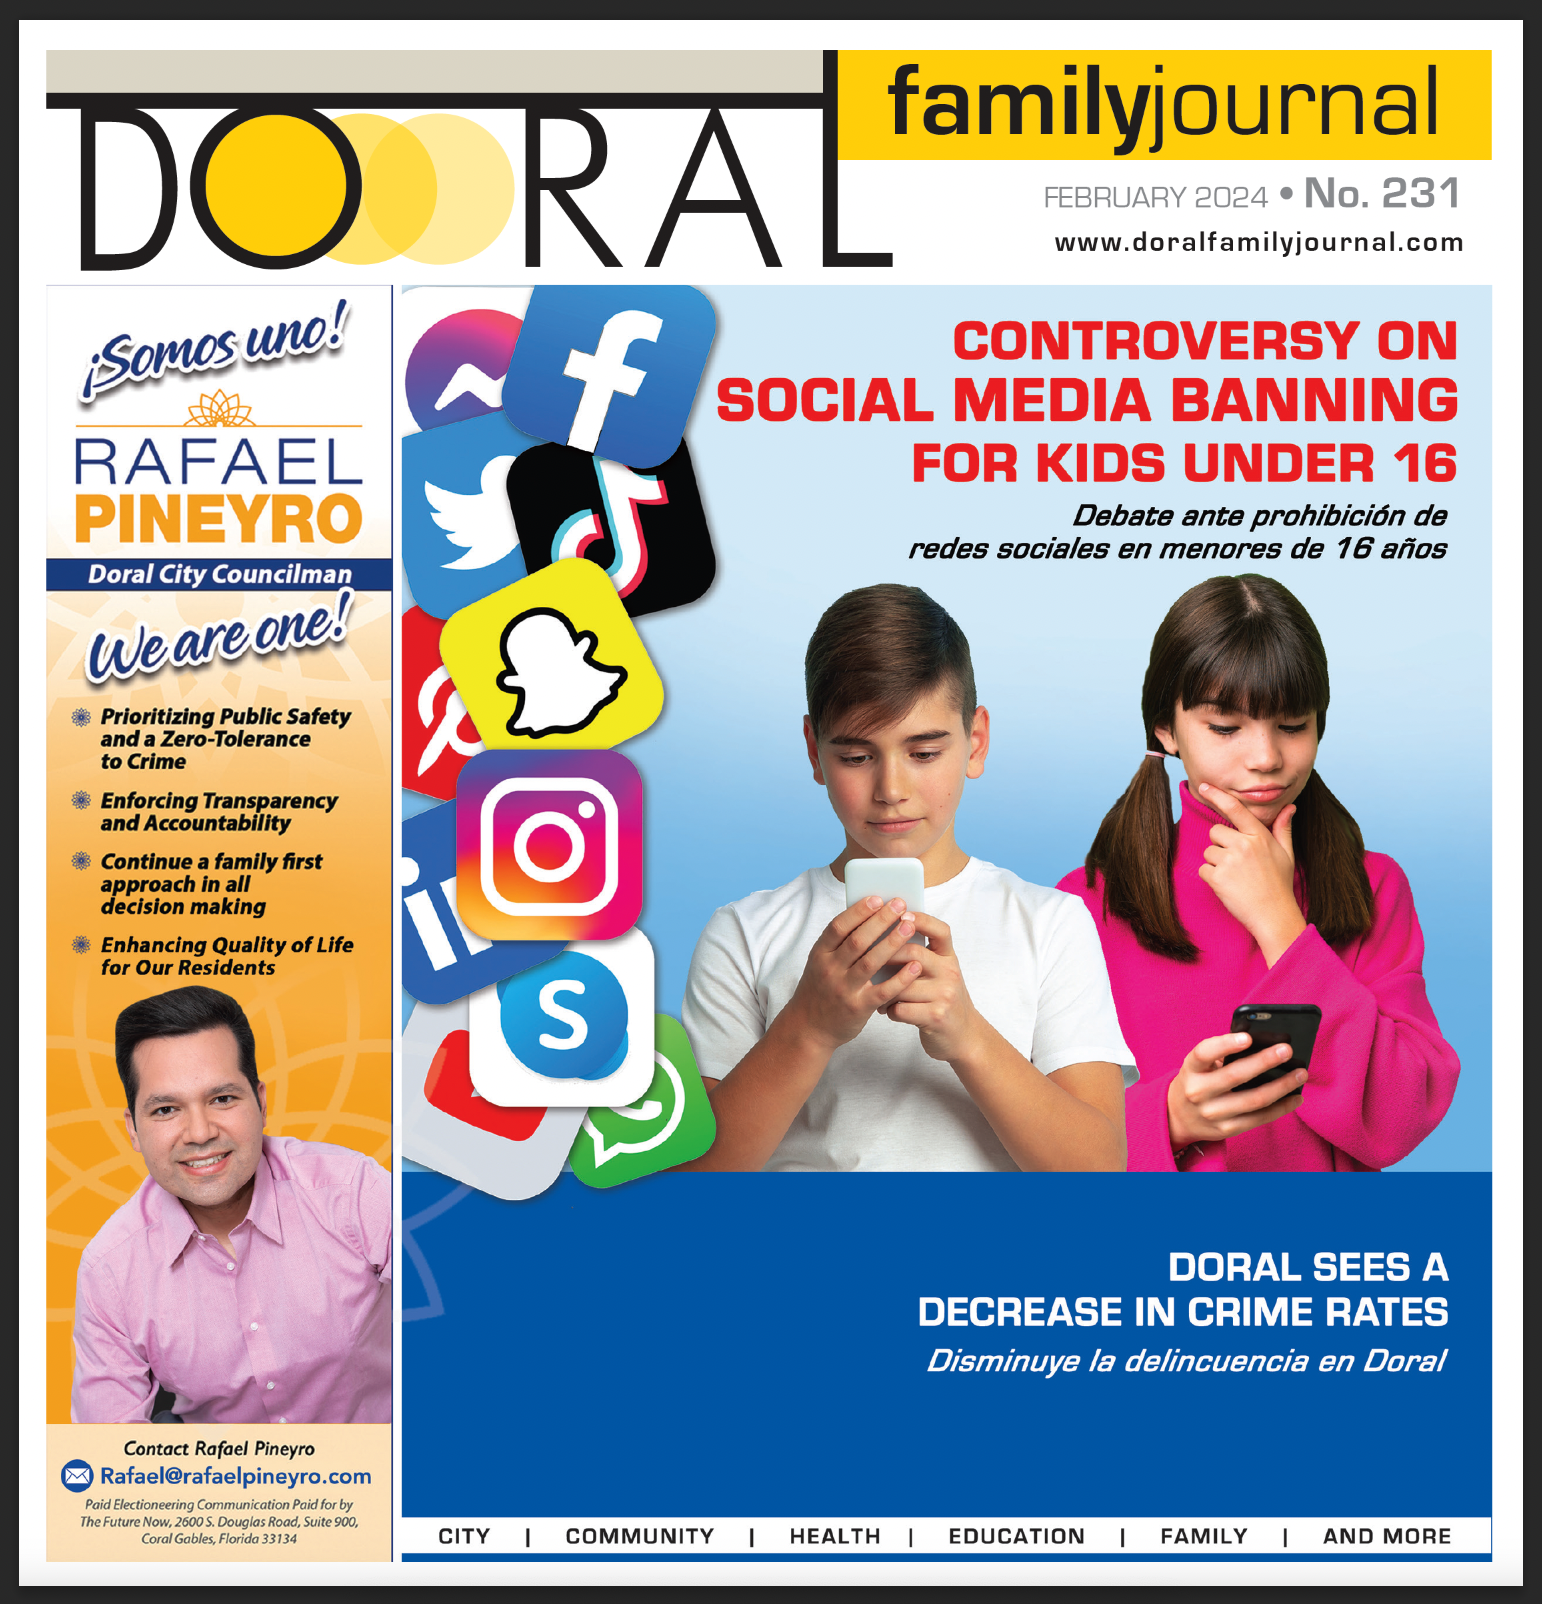 Doral Family Journal